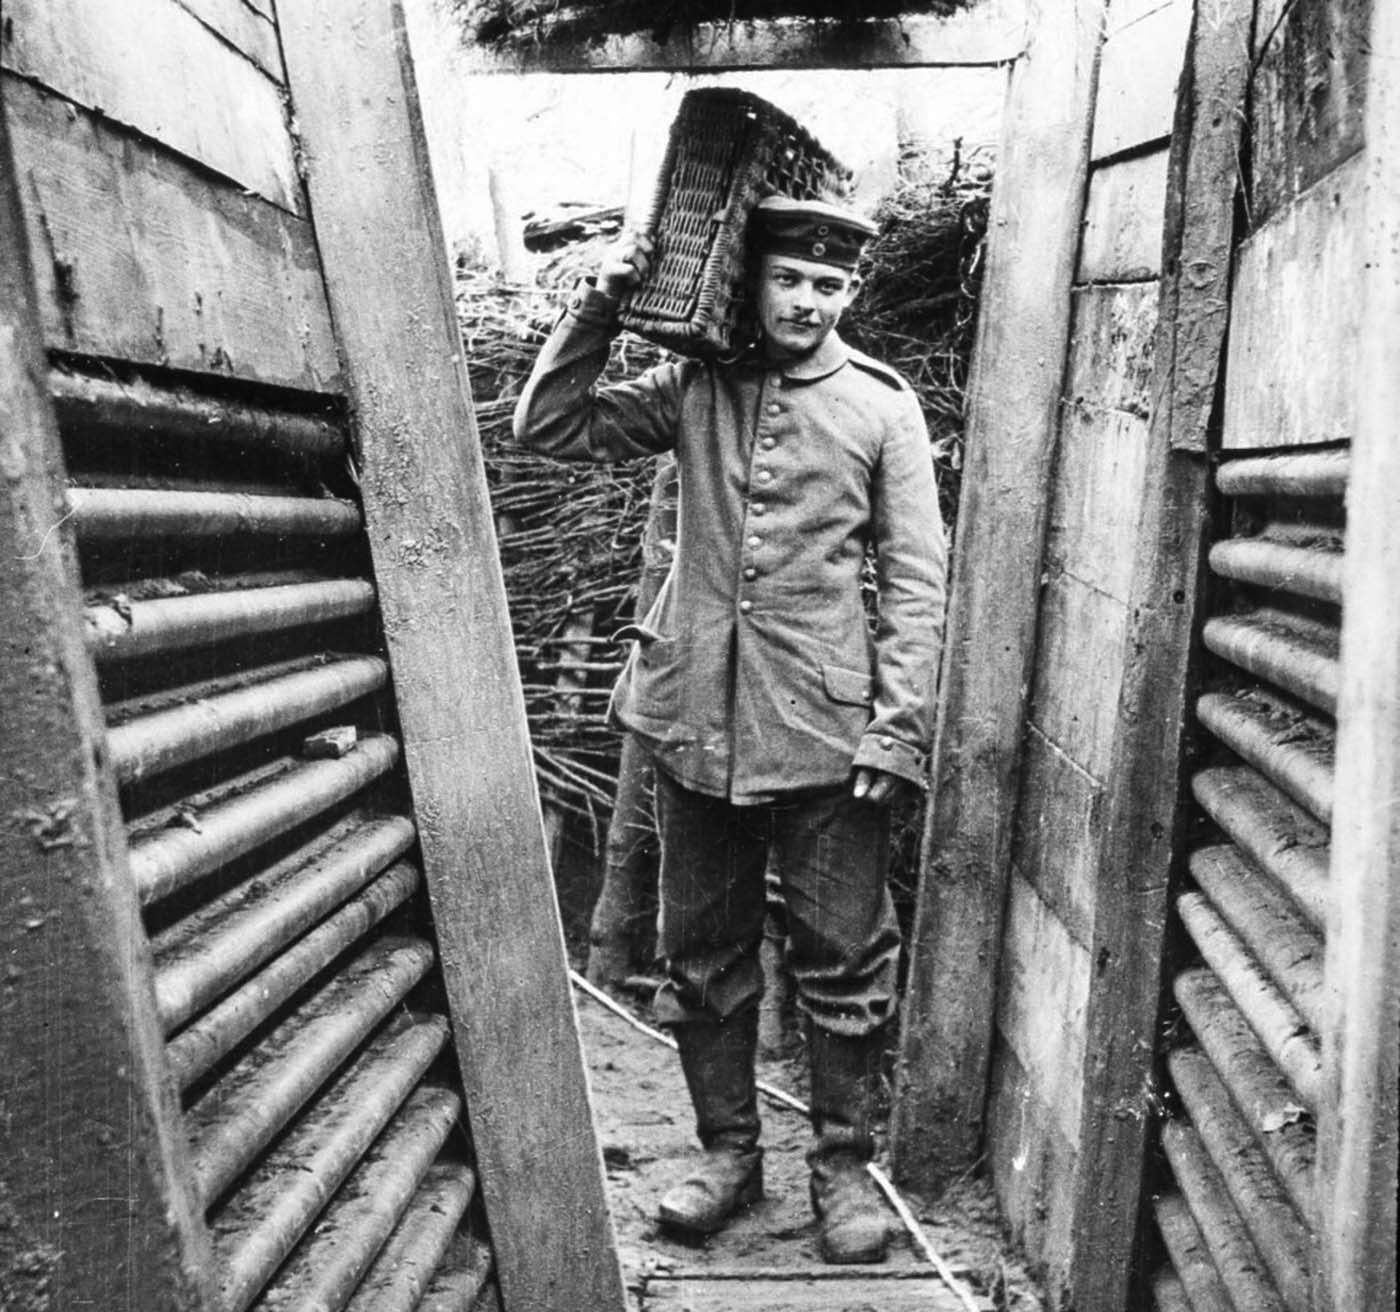 Walter Kleinfeldt de l'album montre les effets d'une escarmouche au cours de la Bataille de la Somme, 1916